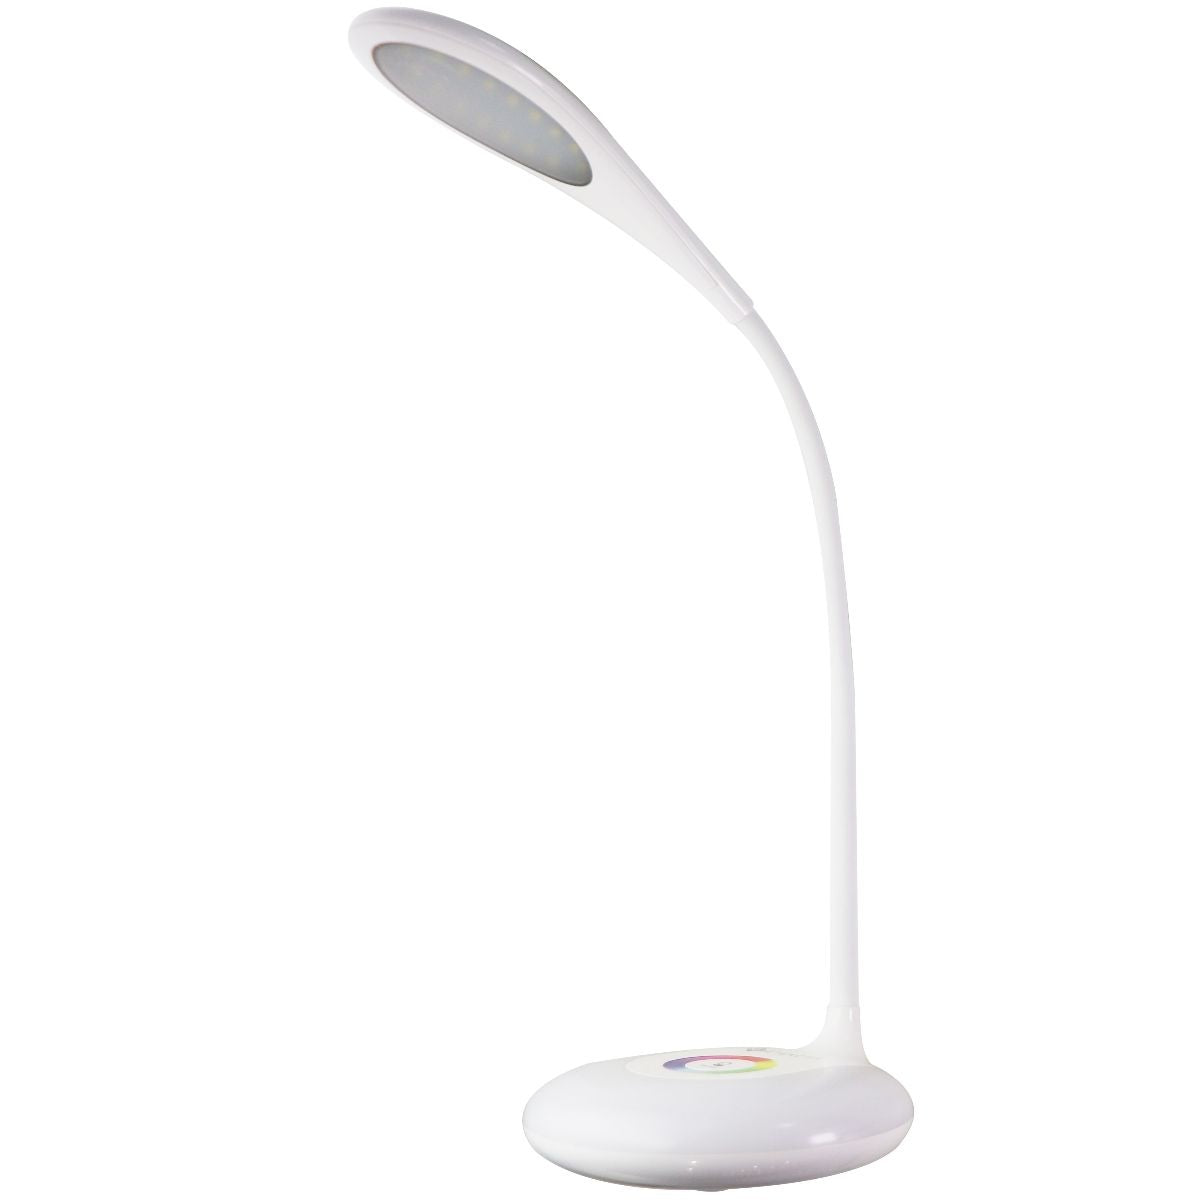  Highly Rated Etekcity LED Folding Desk Lamp Only $39.99